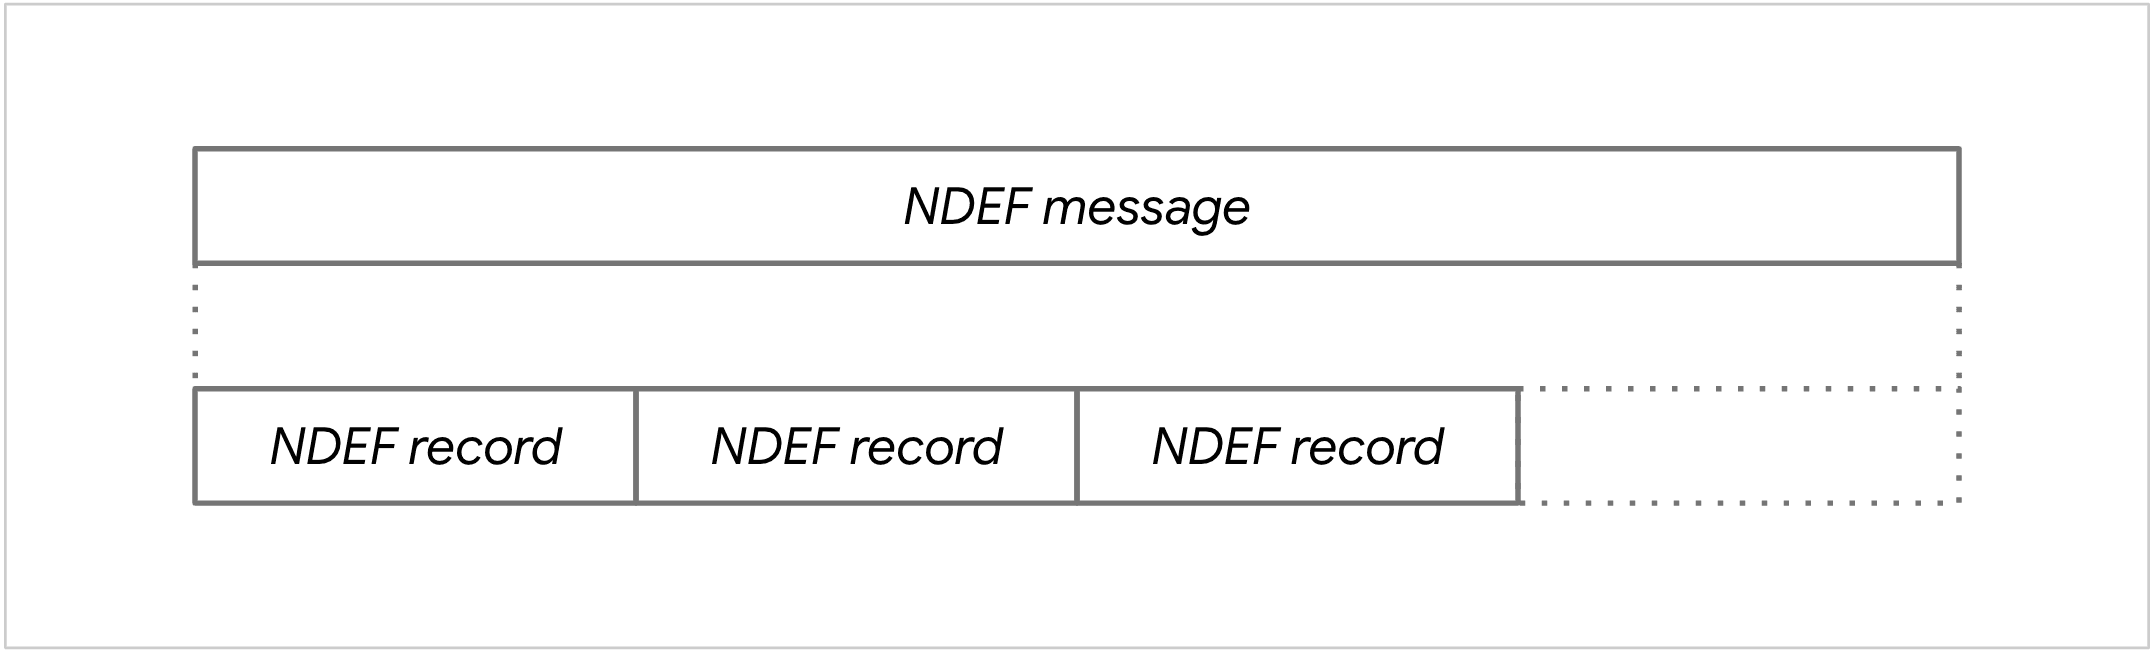 Diagrama de un mensaje NDEF